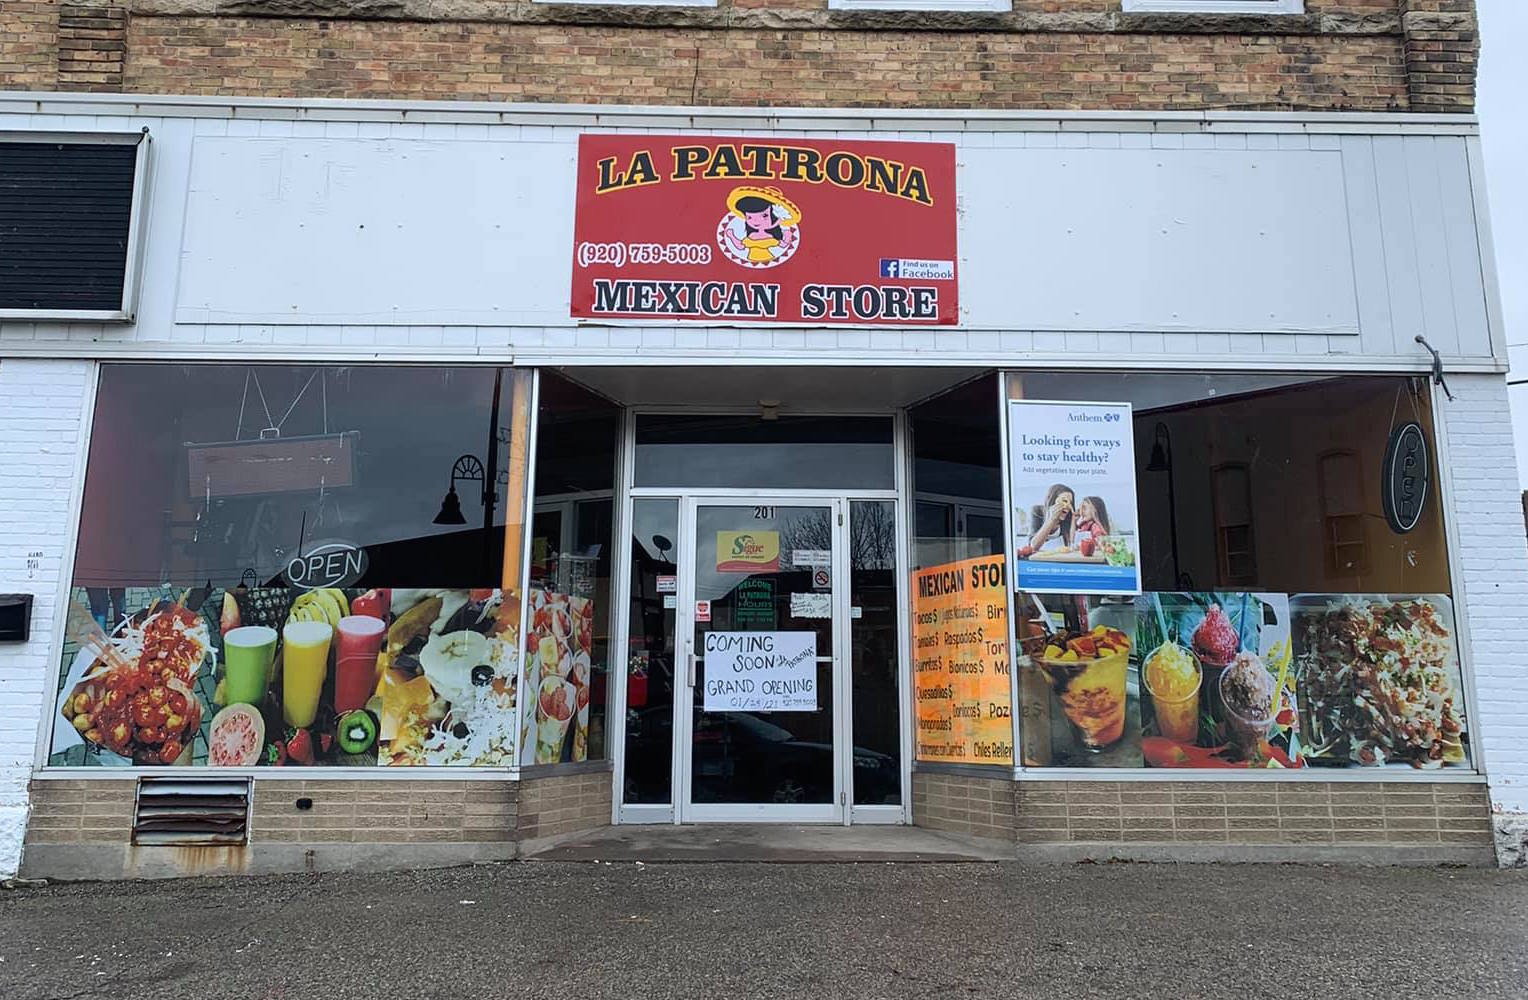 La Patrona Mexican Store, Kaukauna. Tony Penterman photo